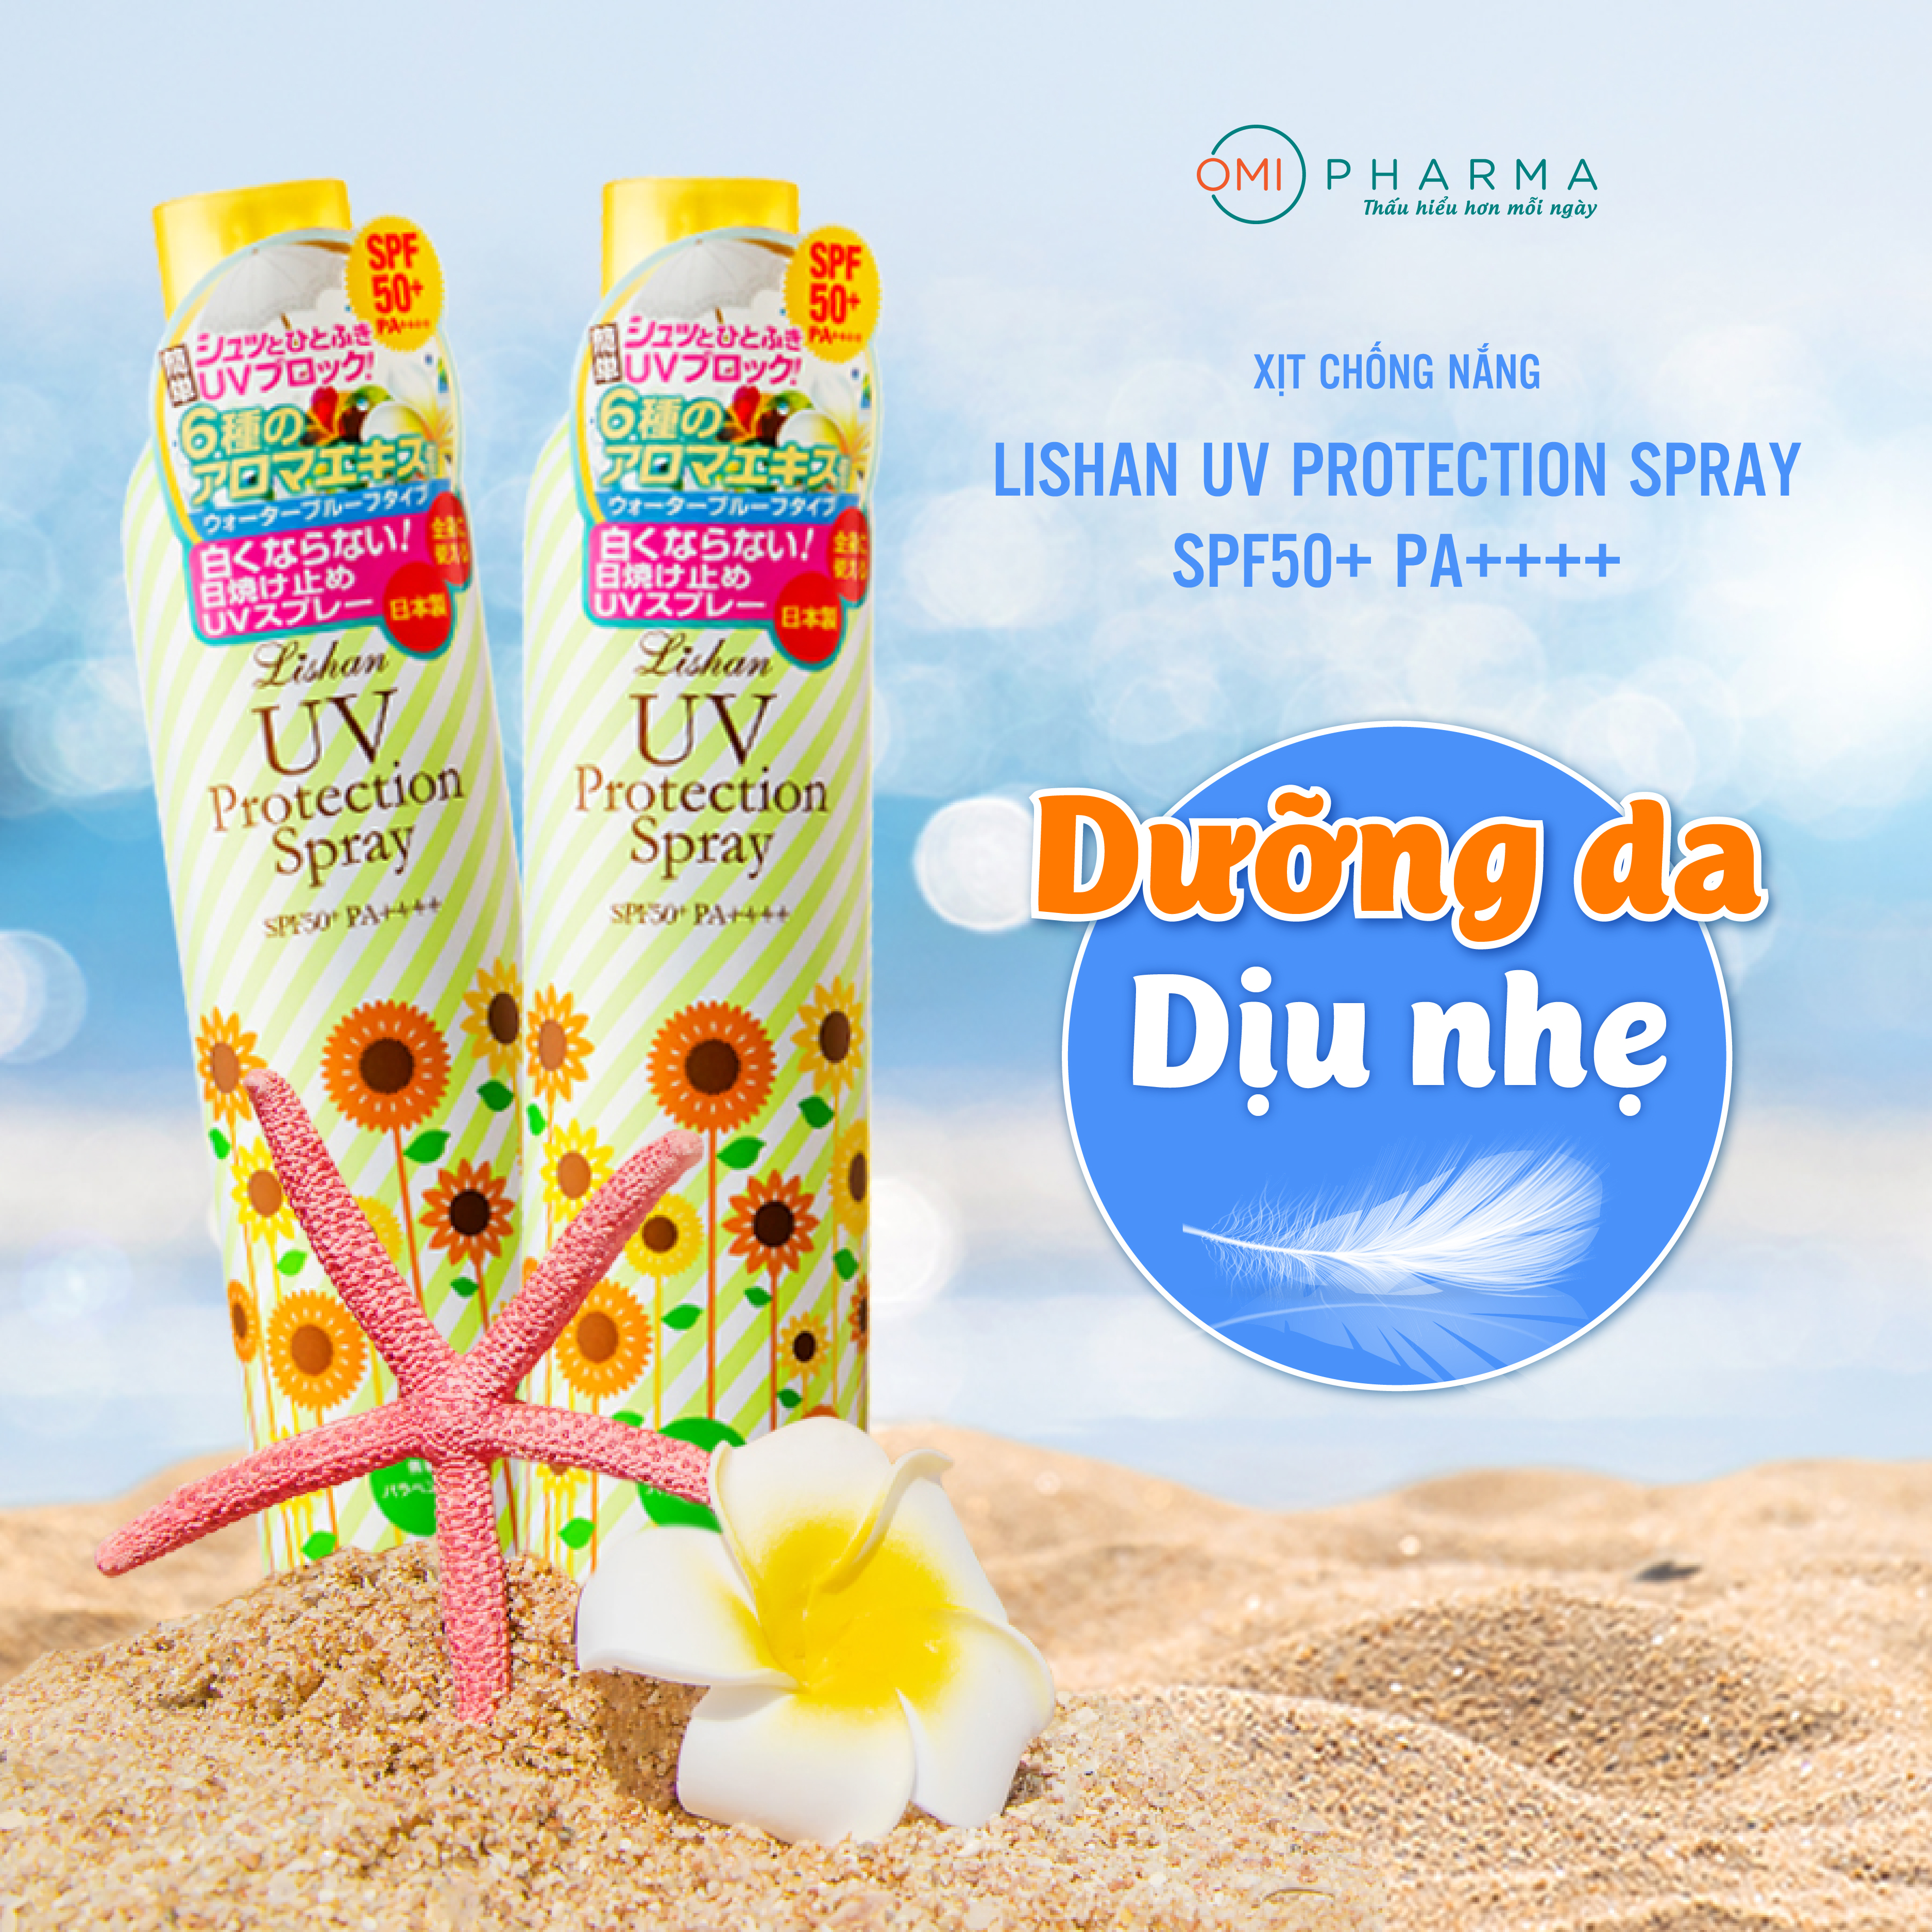 Xịt chống nắng Lishan UV Protection Spray số 1 Nhật Bản 4